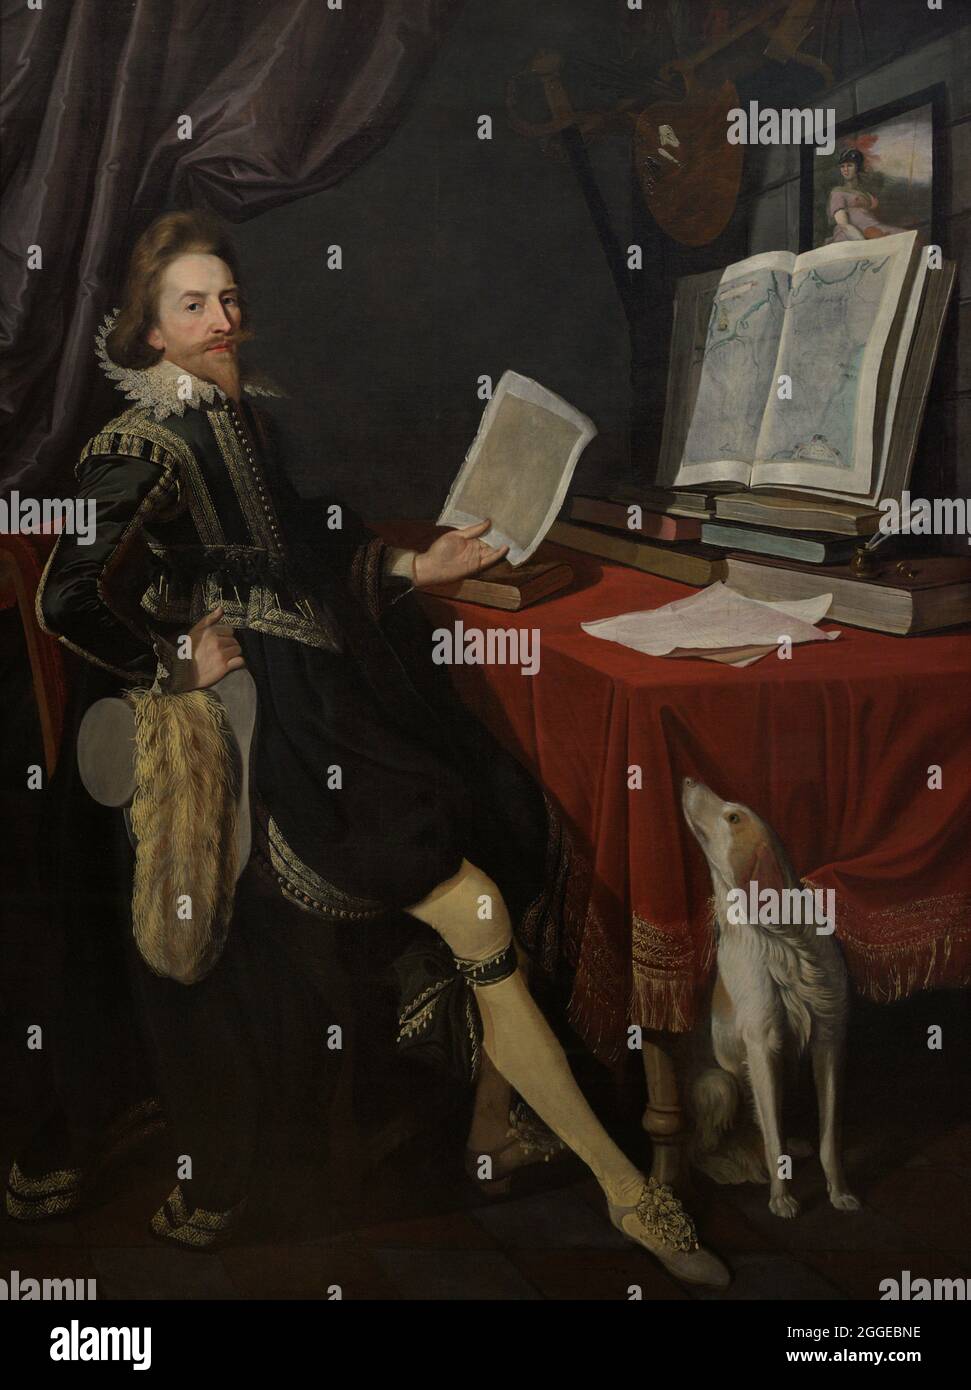 Sir Nathaniel Bacon (1585-1627). Peintre anglais. Autoportrait. Huile sur toile (206,4 x 153,7 cm), env.1620. Galerie nationale de portraits. Londres, Angleterre, Royaume-Uni. Banque D'Images